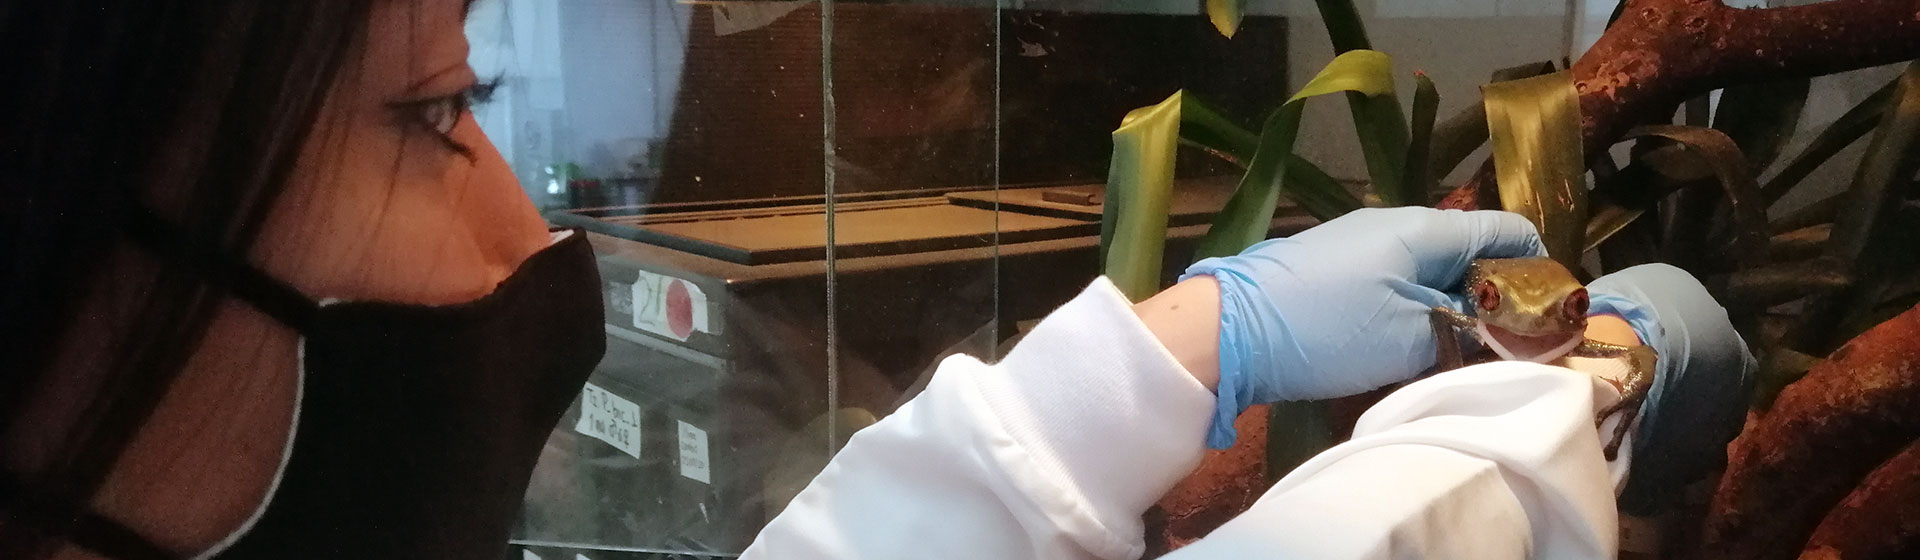 Investigadora en laboratorio con rana en las manos